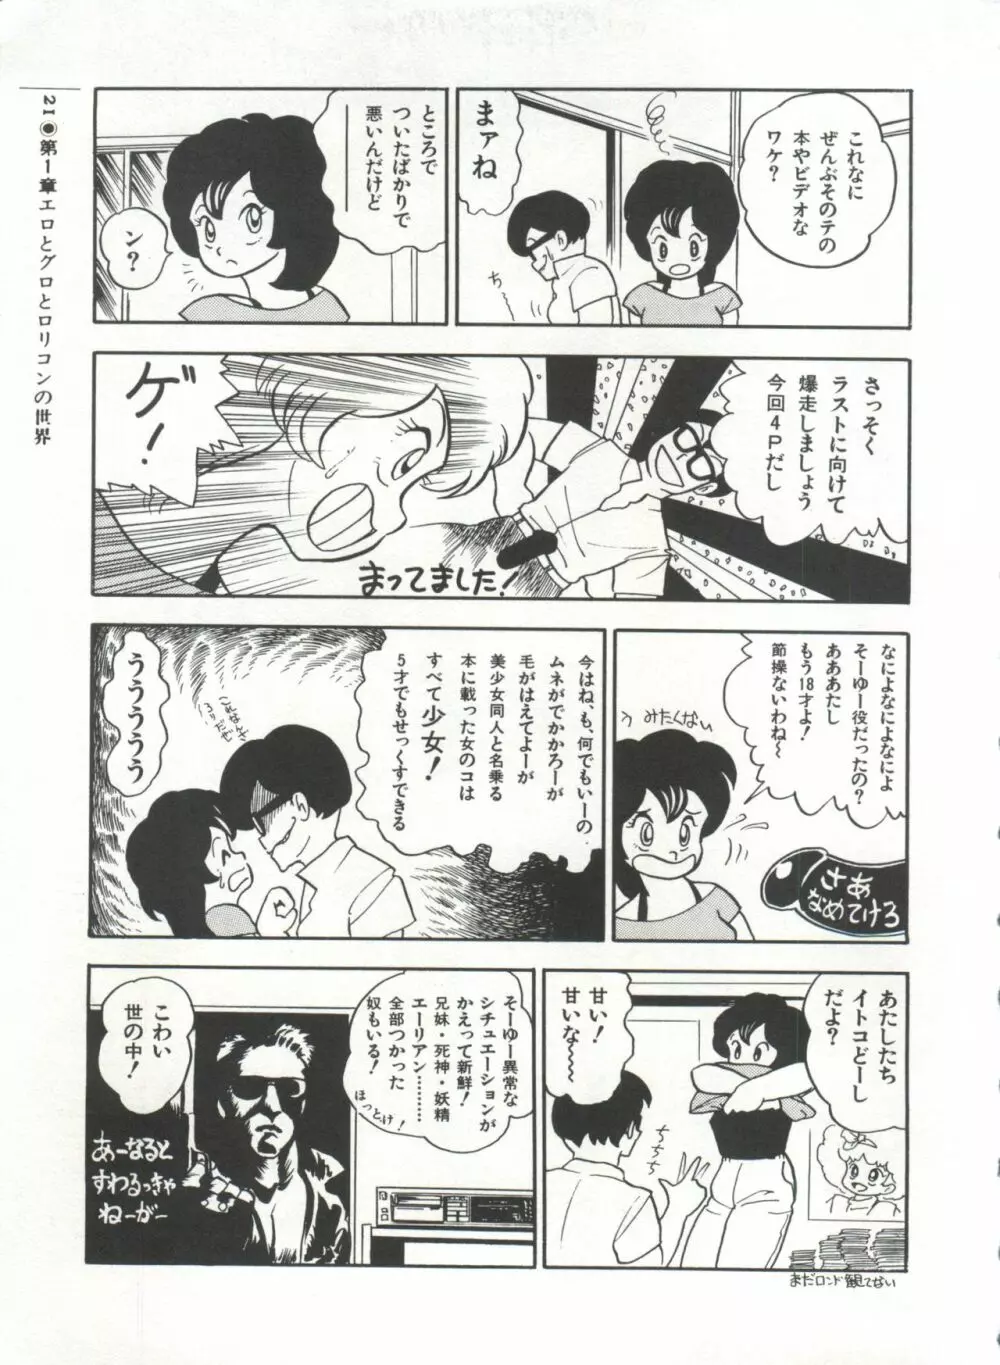 [Anthology] 美少女症候群(2) Lolita syndrome (よろず) 24ページ